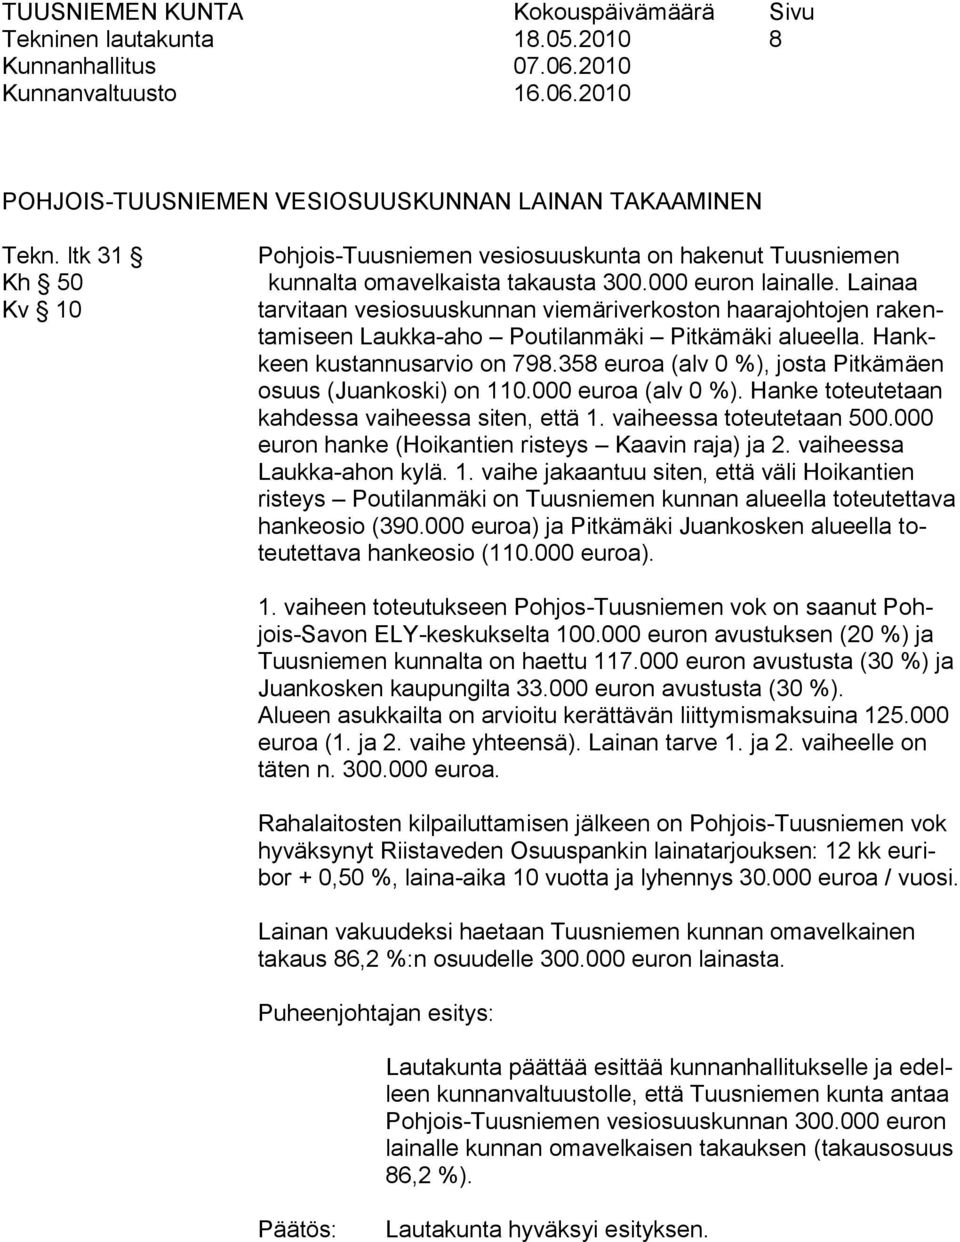 Lainaa tarvitaan vesiosuuskunnan viemäriverkoston haarajohtojen rakentamiseen Laukka-aho Poutilanmäki Pitkämäki alueella. Hankkeen kustannusarvio on 798.